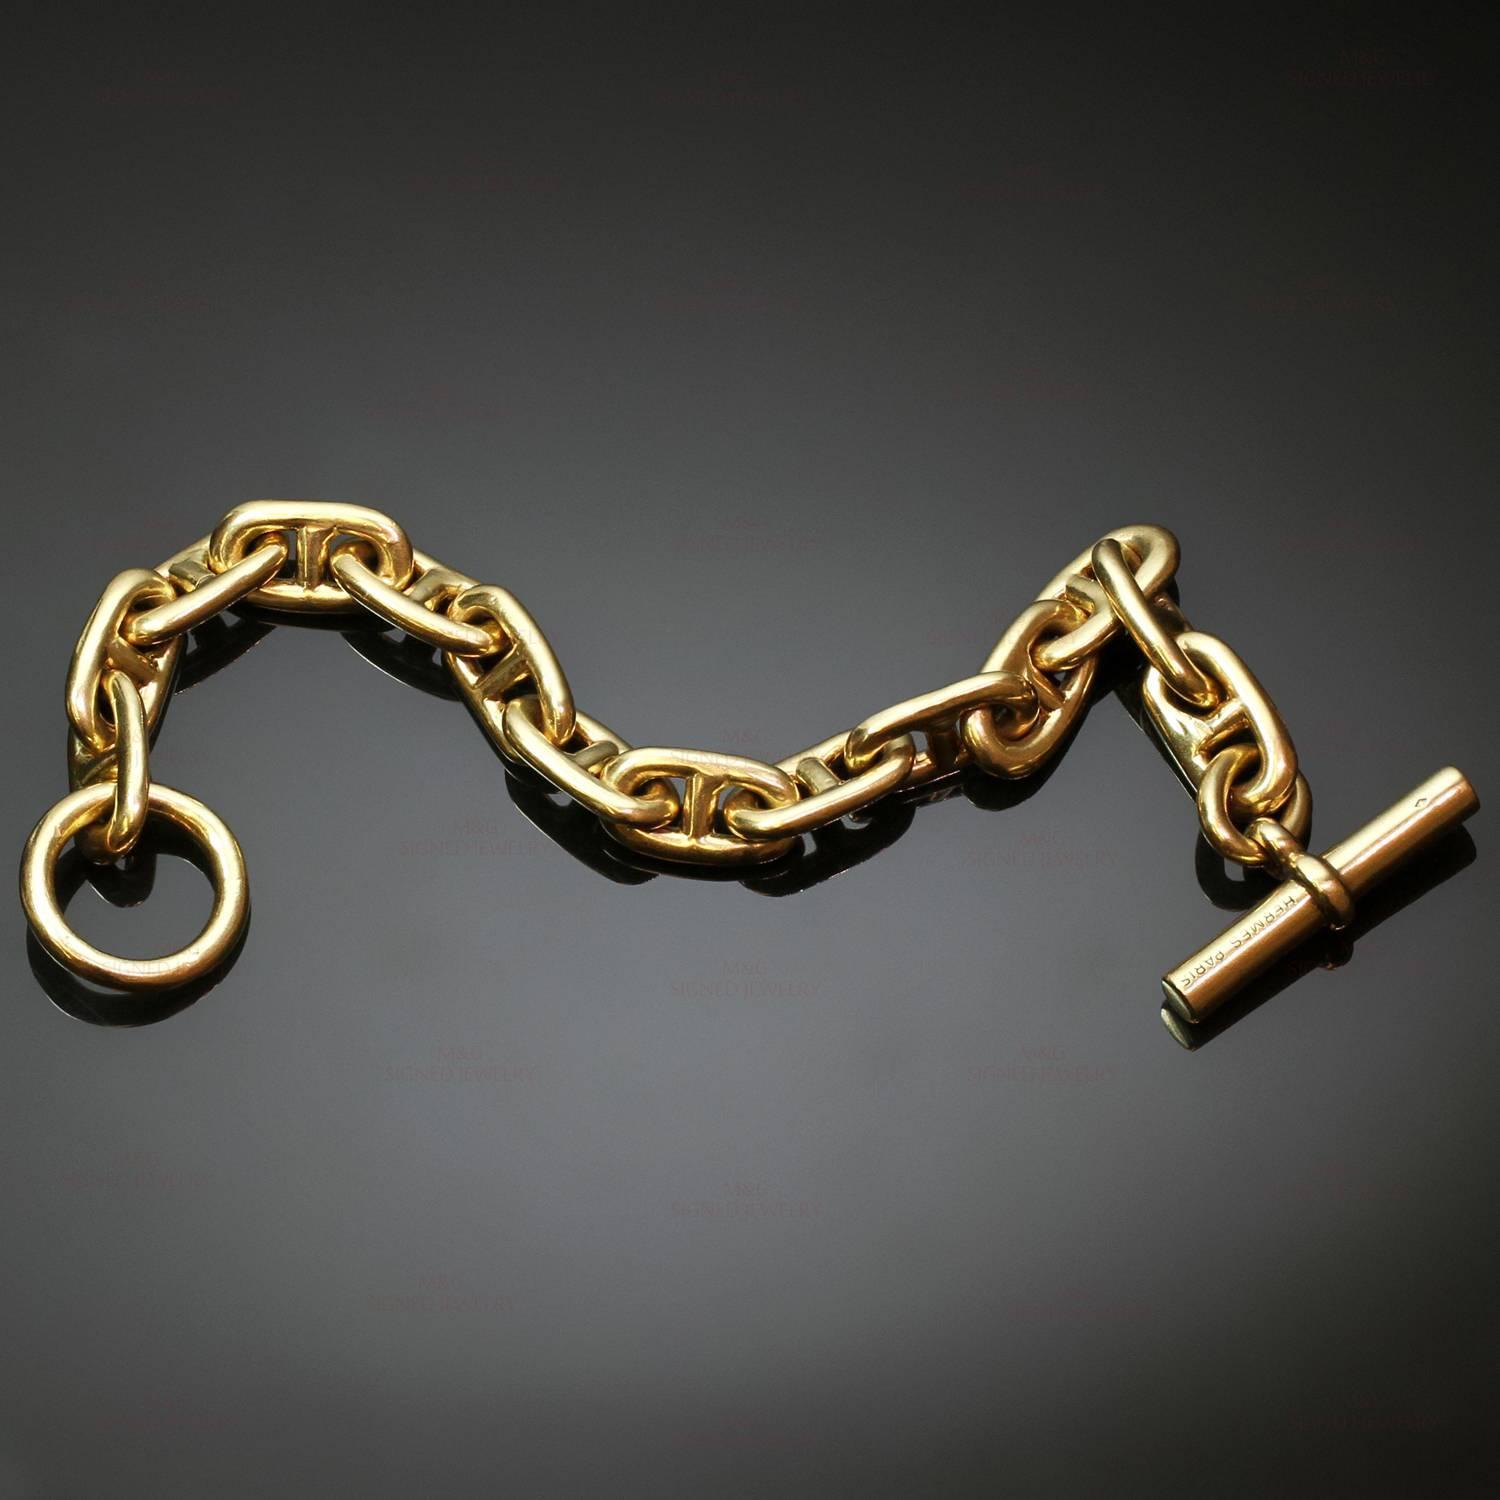 Hermes Chaîne d'Ancre Gold Large Link Toogle Bracelet at 1stdibs